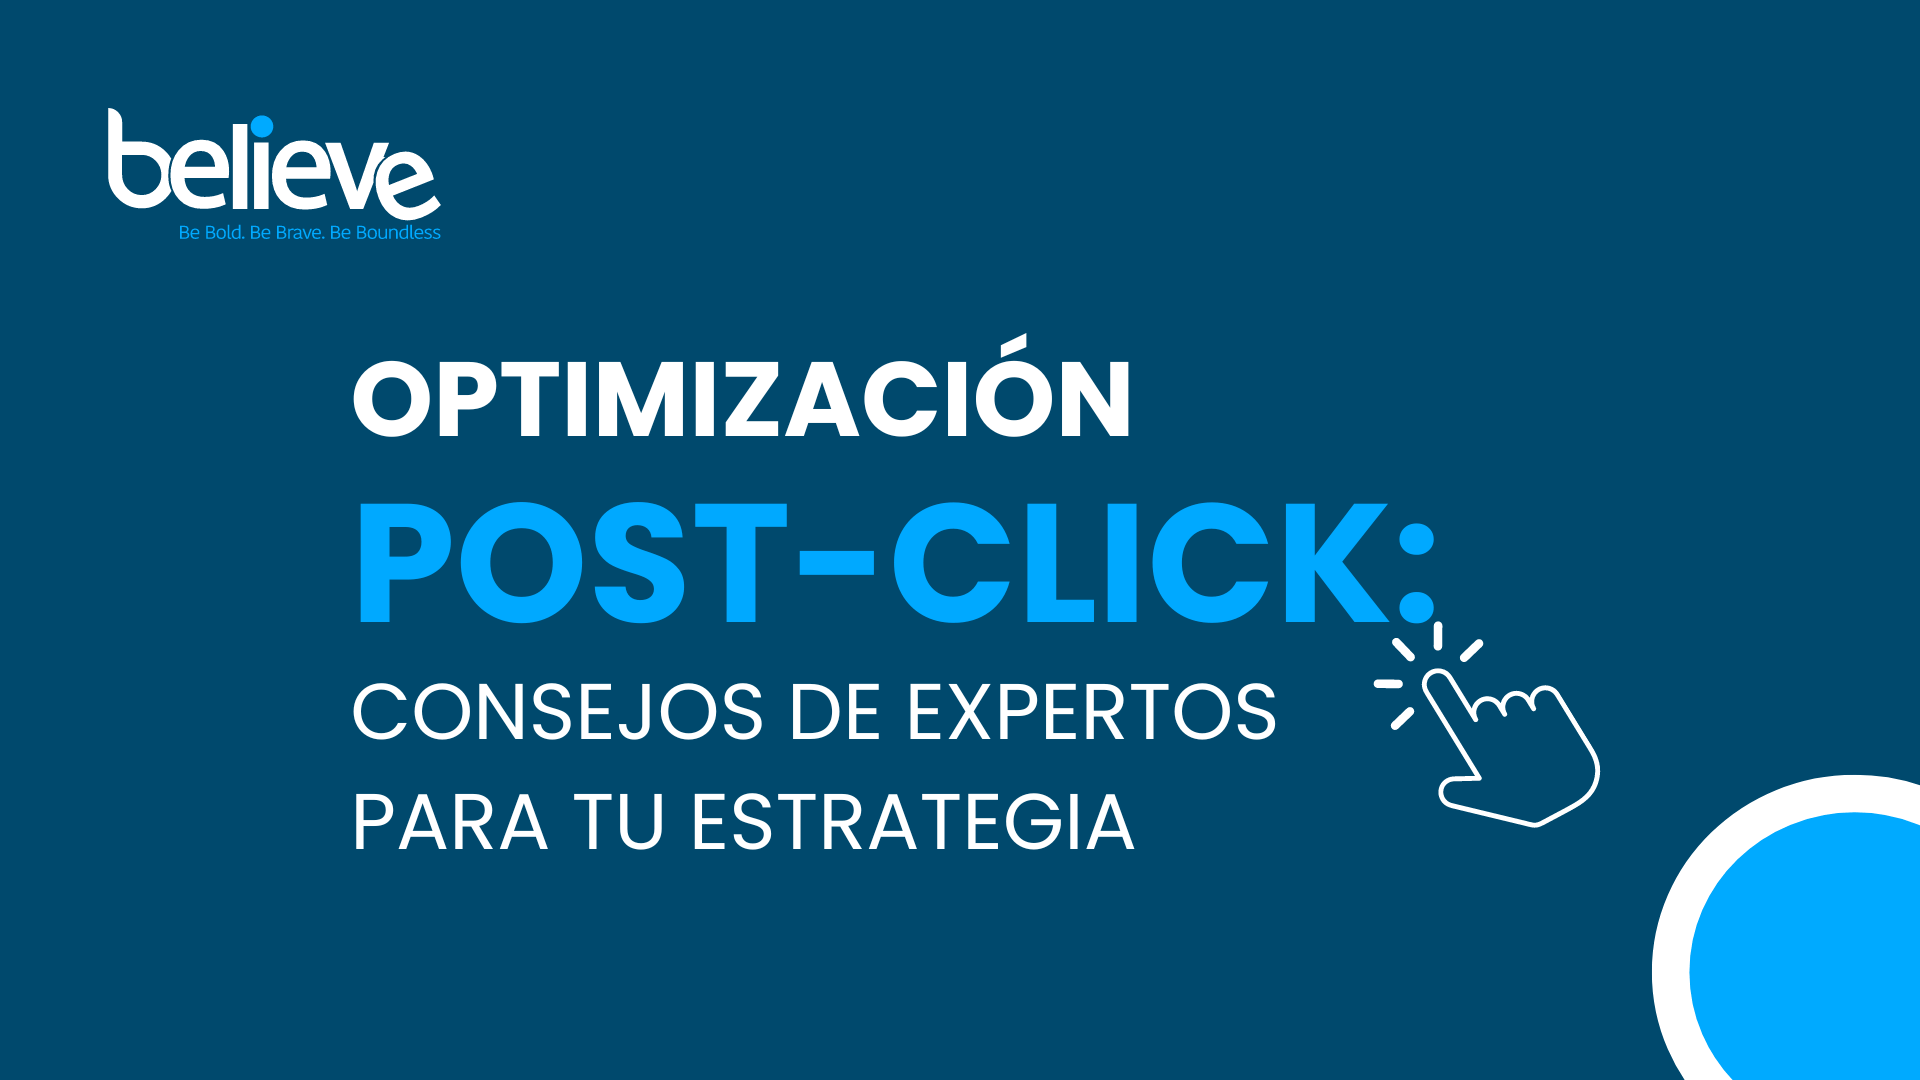 Optimización Post Click, optimización de estrategia